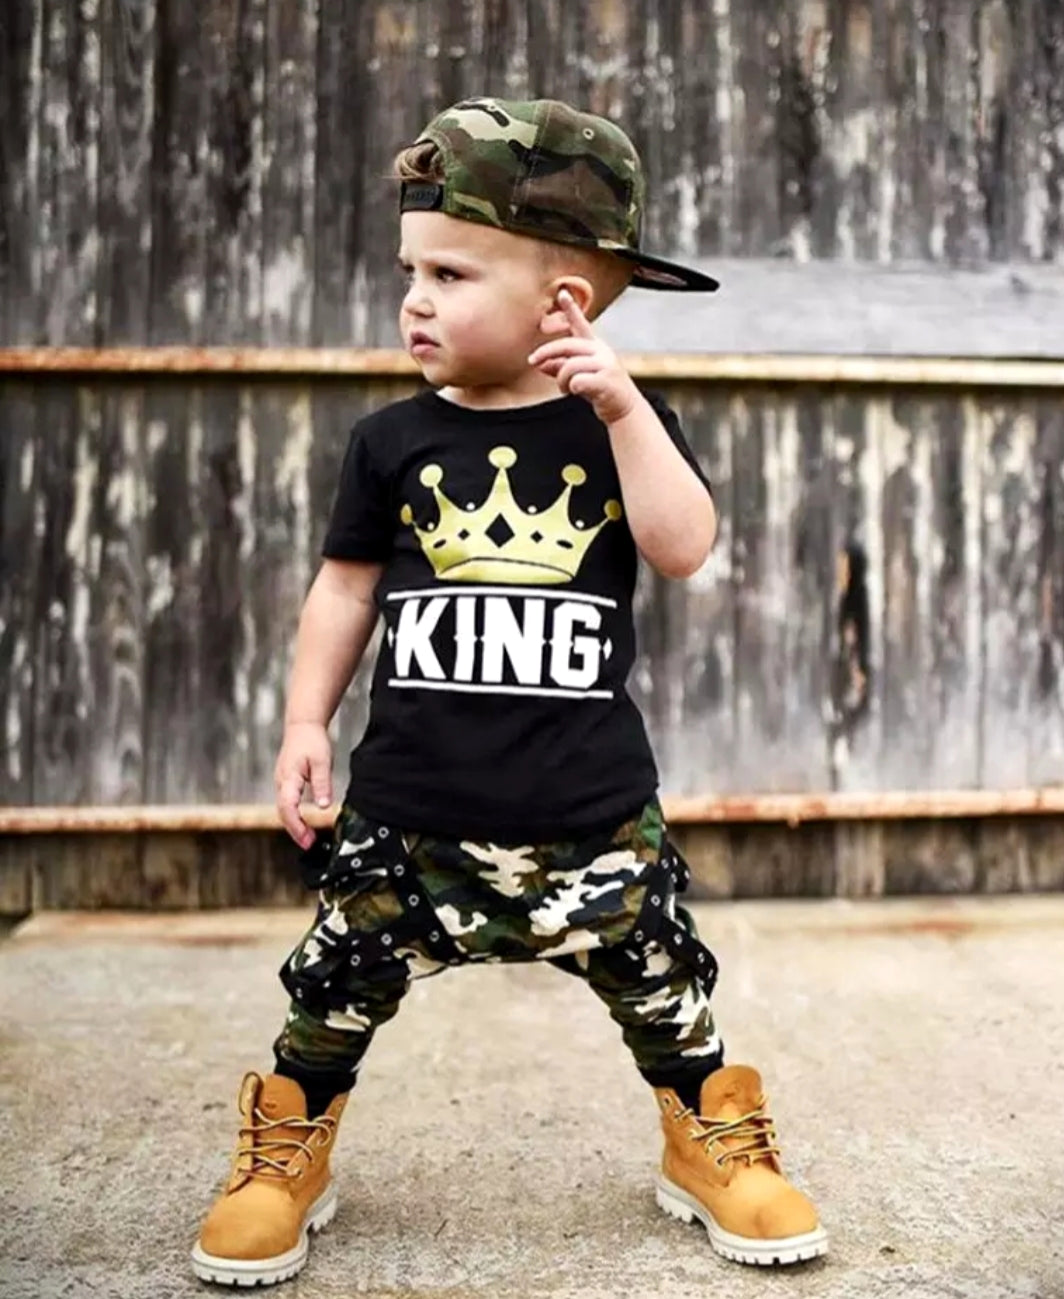 King T-shirt and Camo Pants